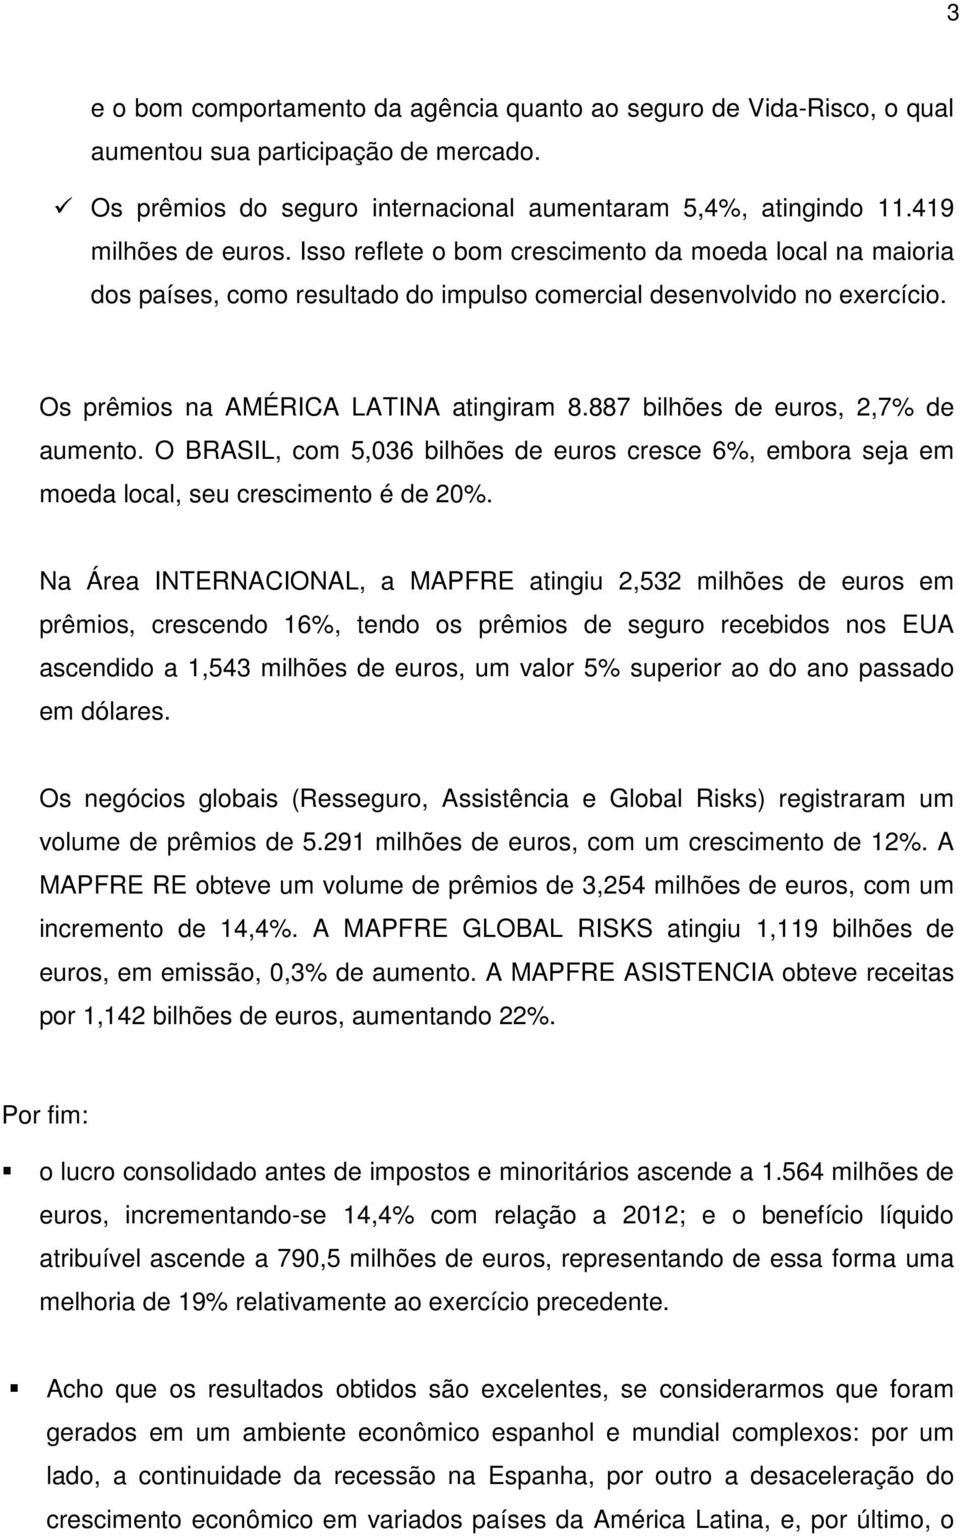 887 bilhões de euros, 2,7% de aumento. O BRASIL, com 5,036 bilhões de euros cresce 6%, embora seja em moeda local, seu crescimento é de 20%.